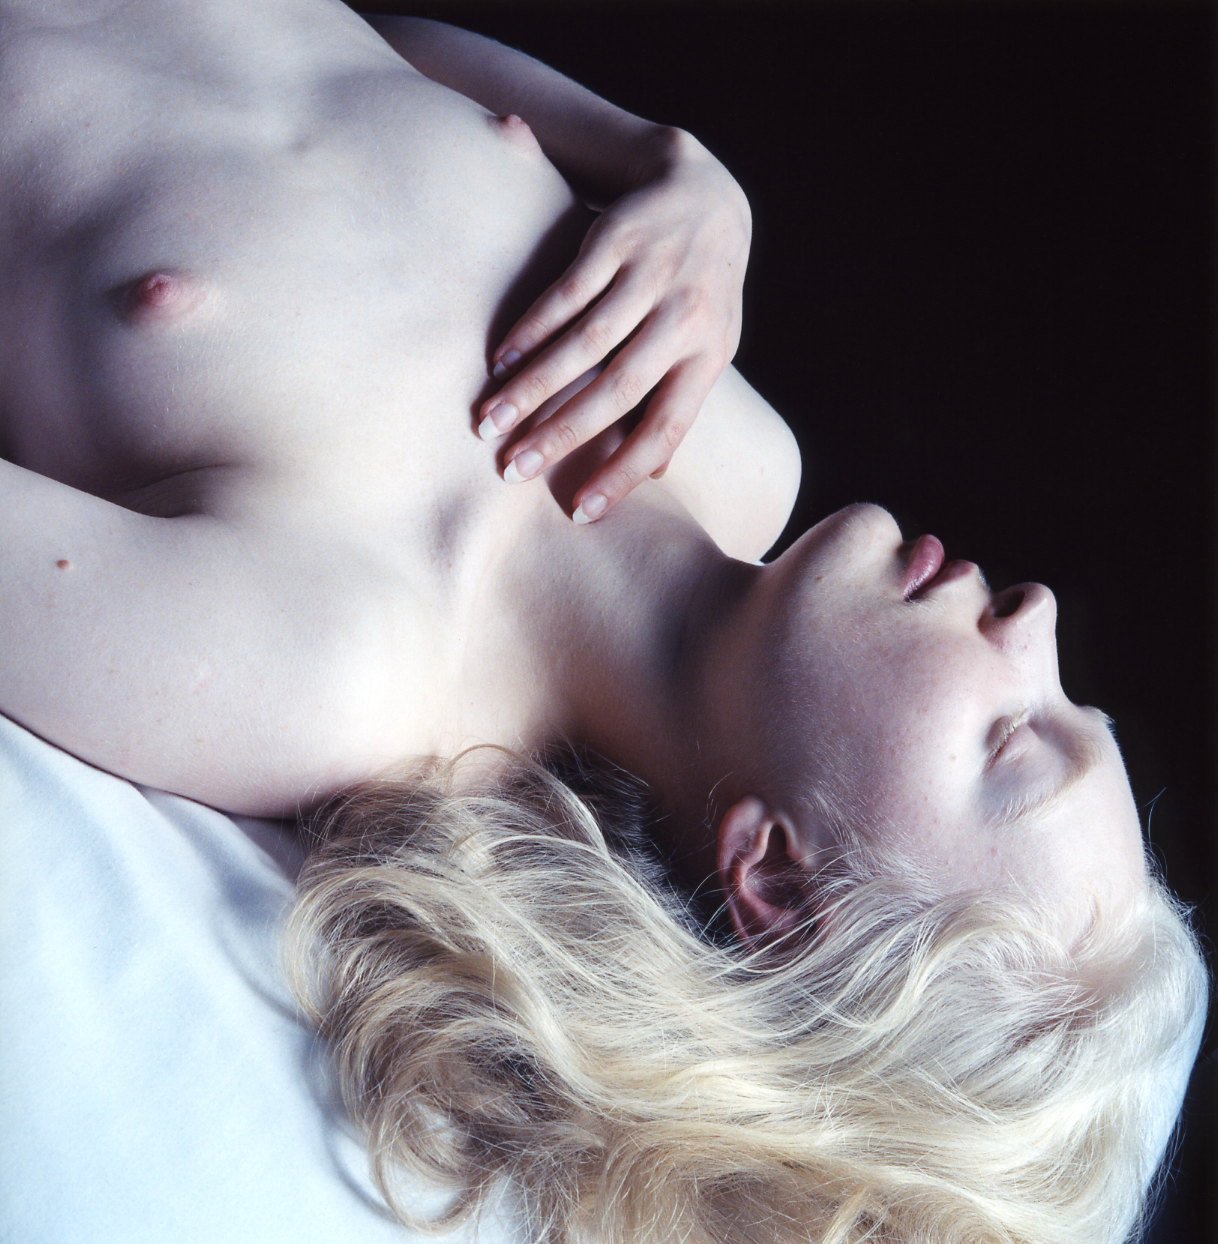 Albino pornstar - 🧡 Голые девушки альбиносы - 57 красивых секс фото.